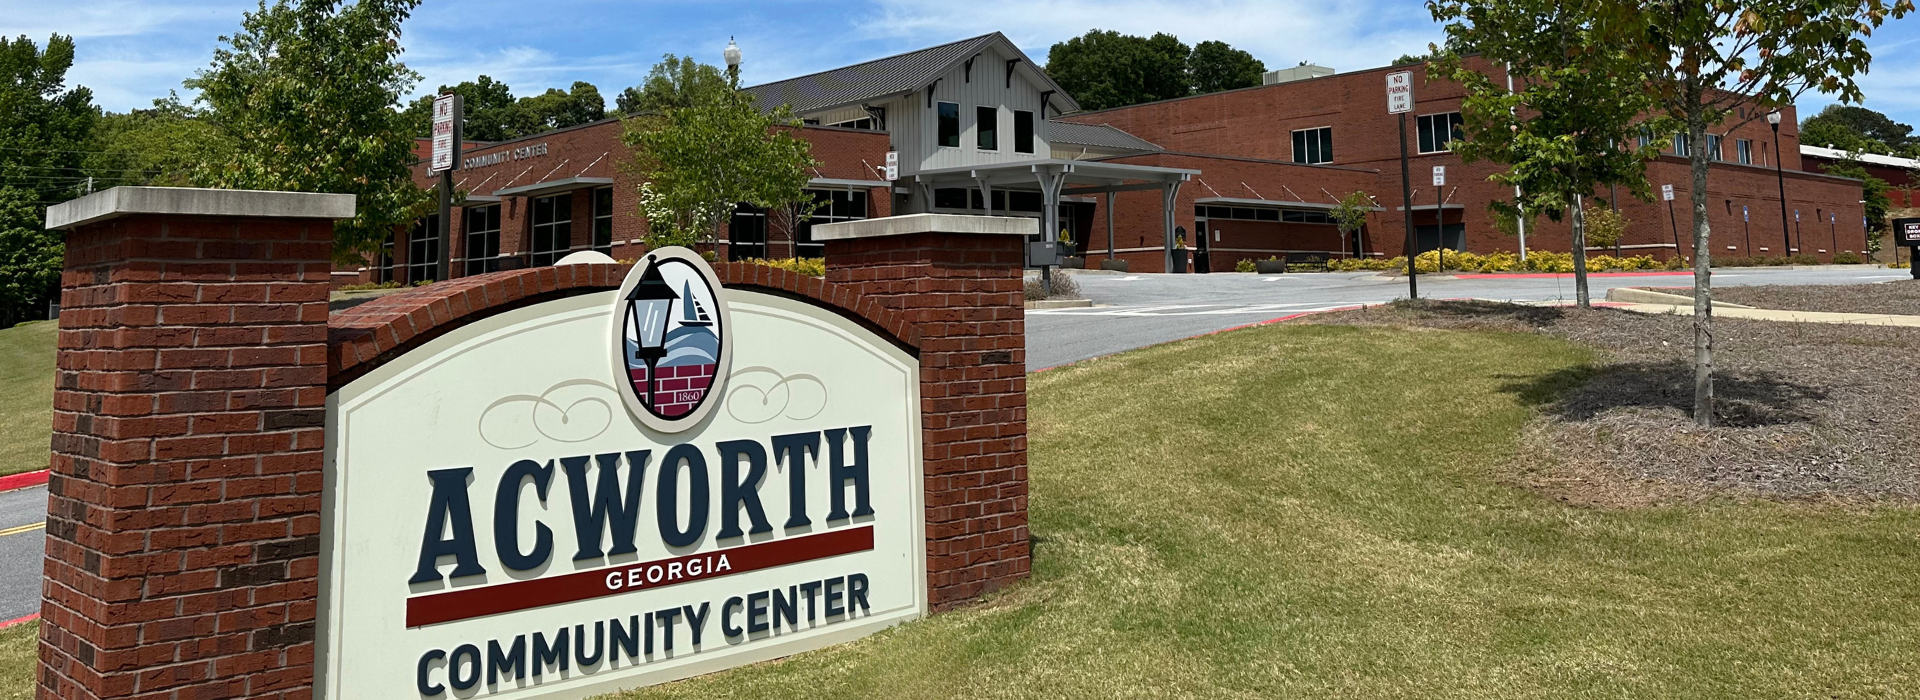 Image of Acworth Community Center